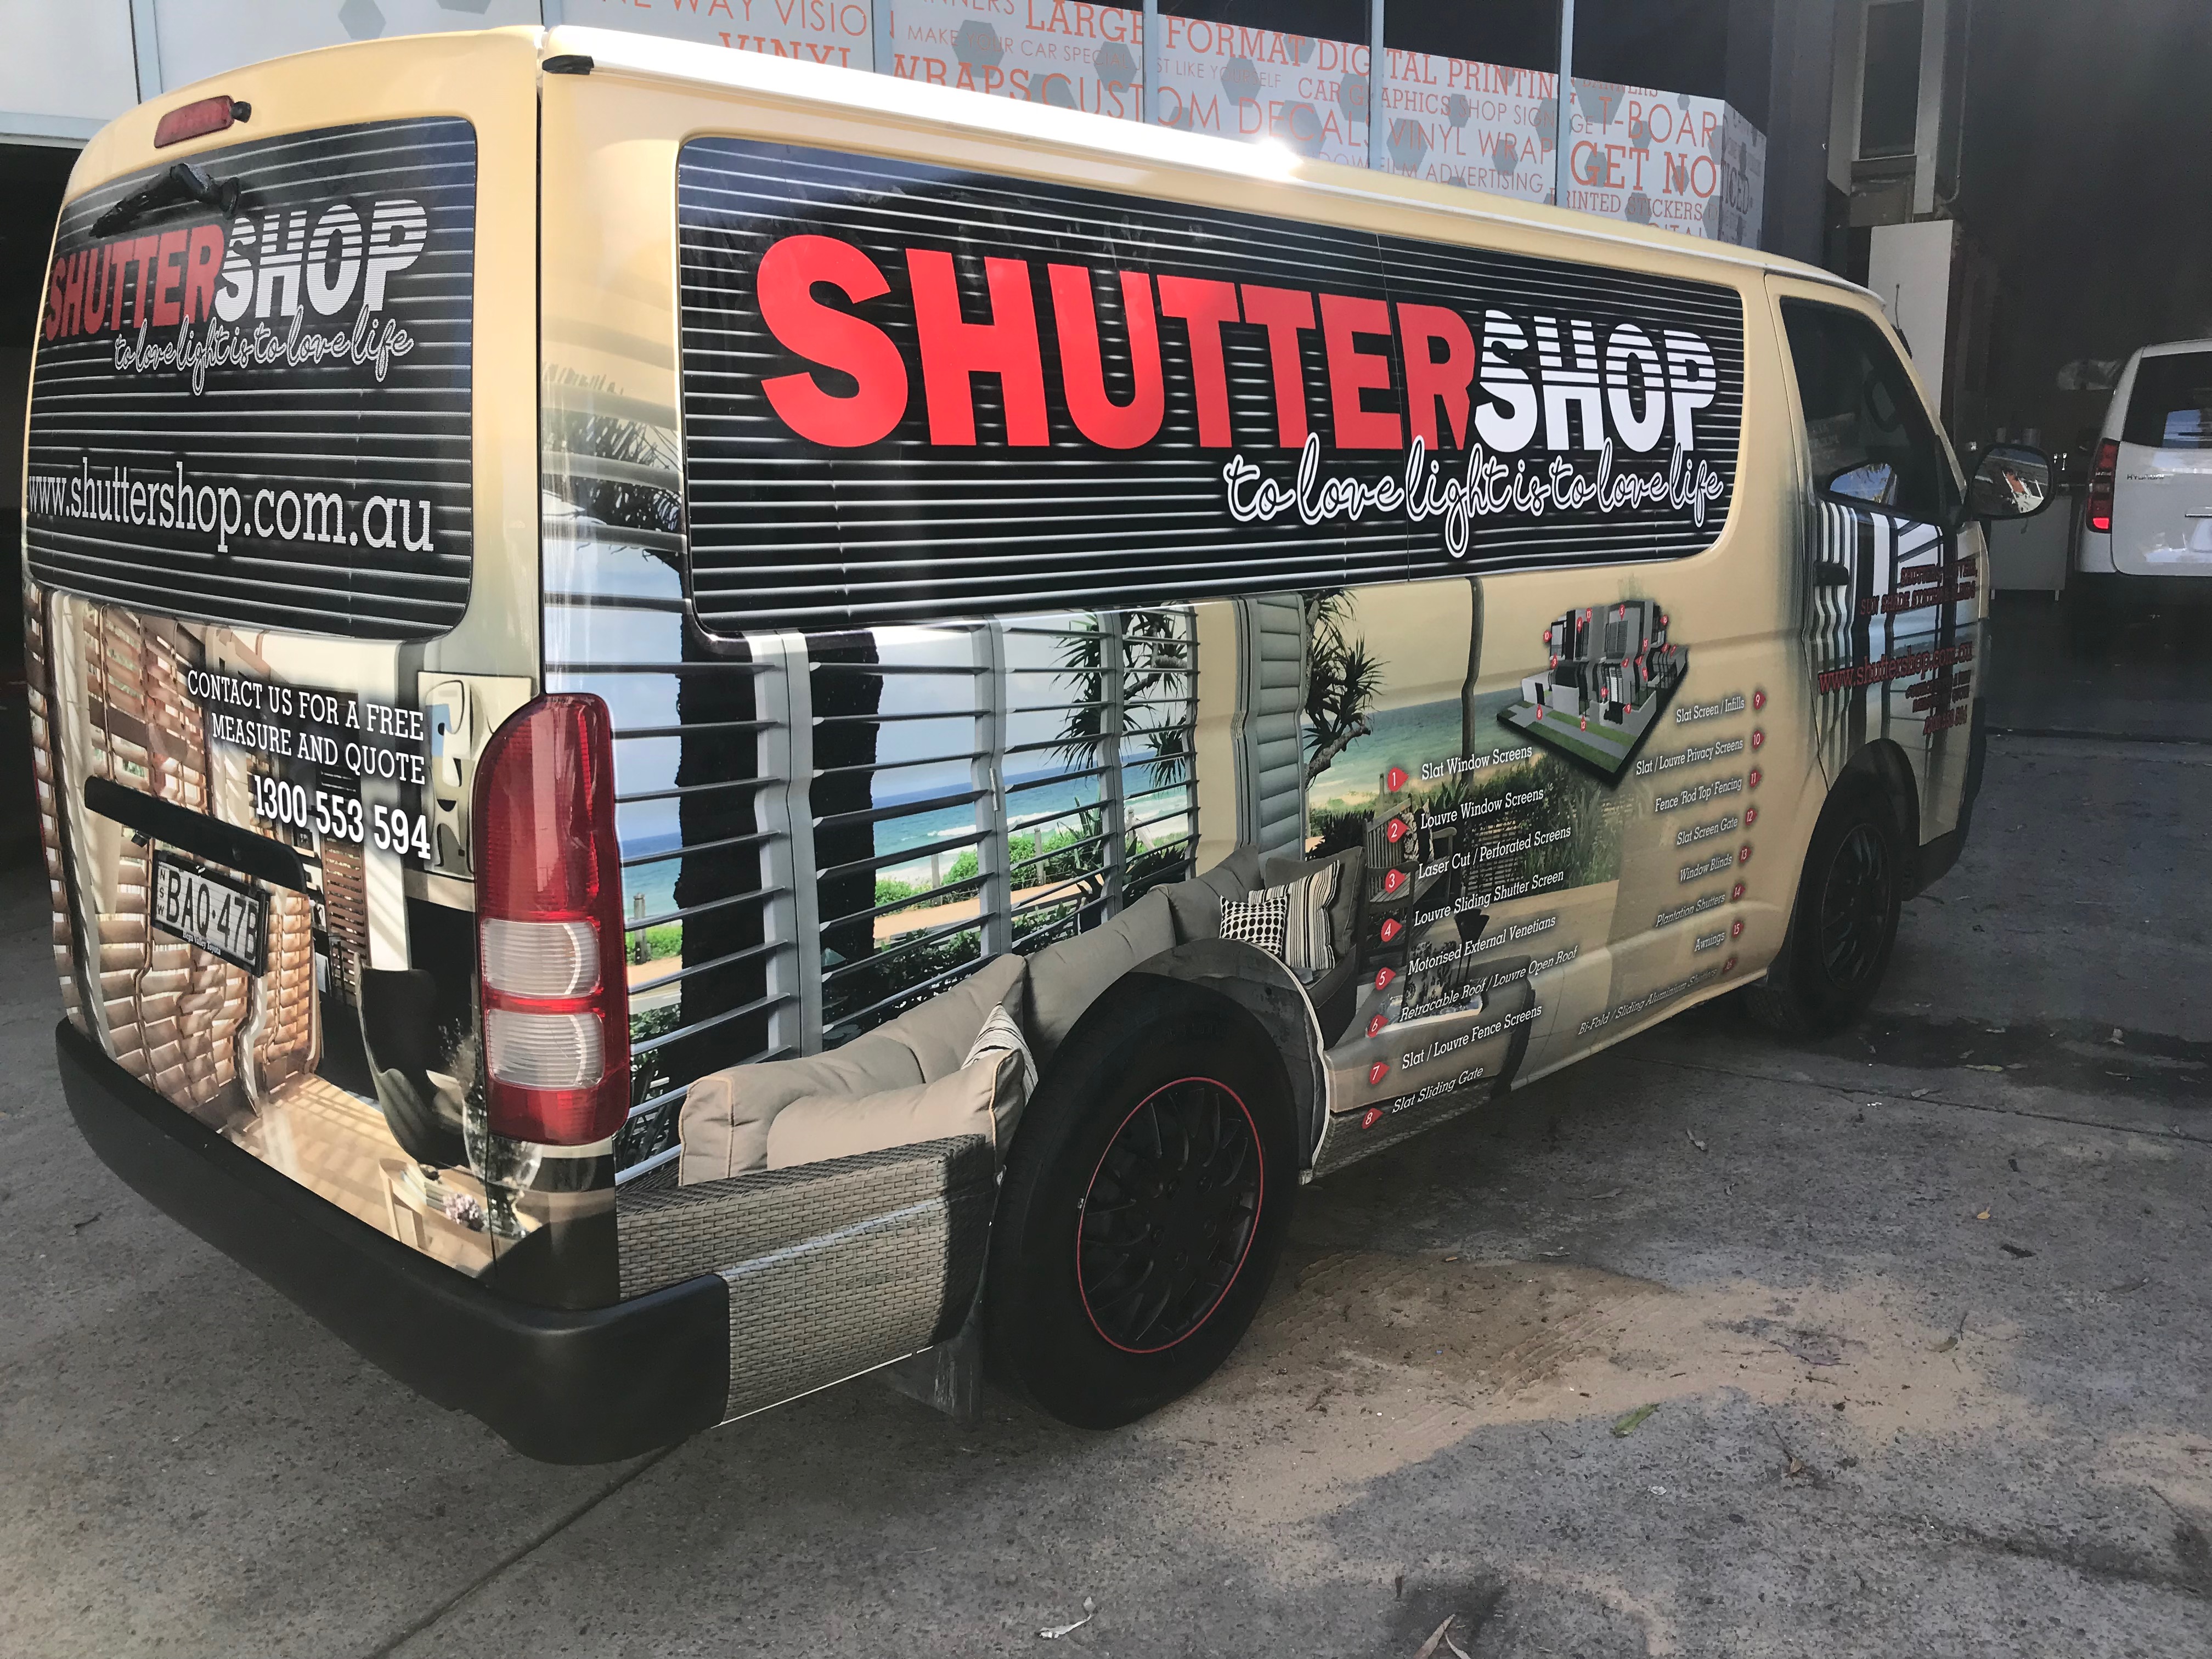 Shutter Shop